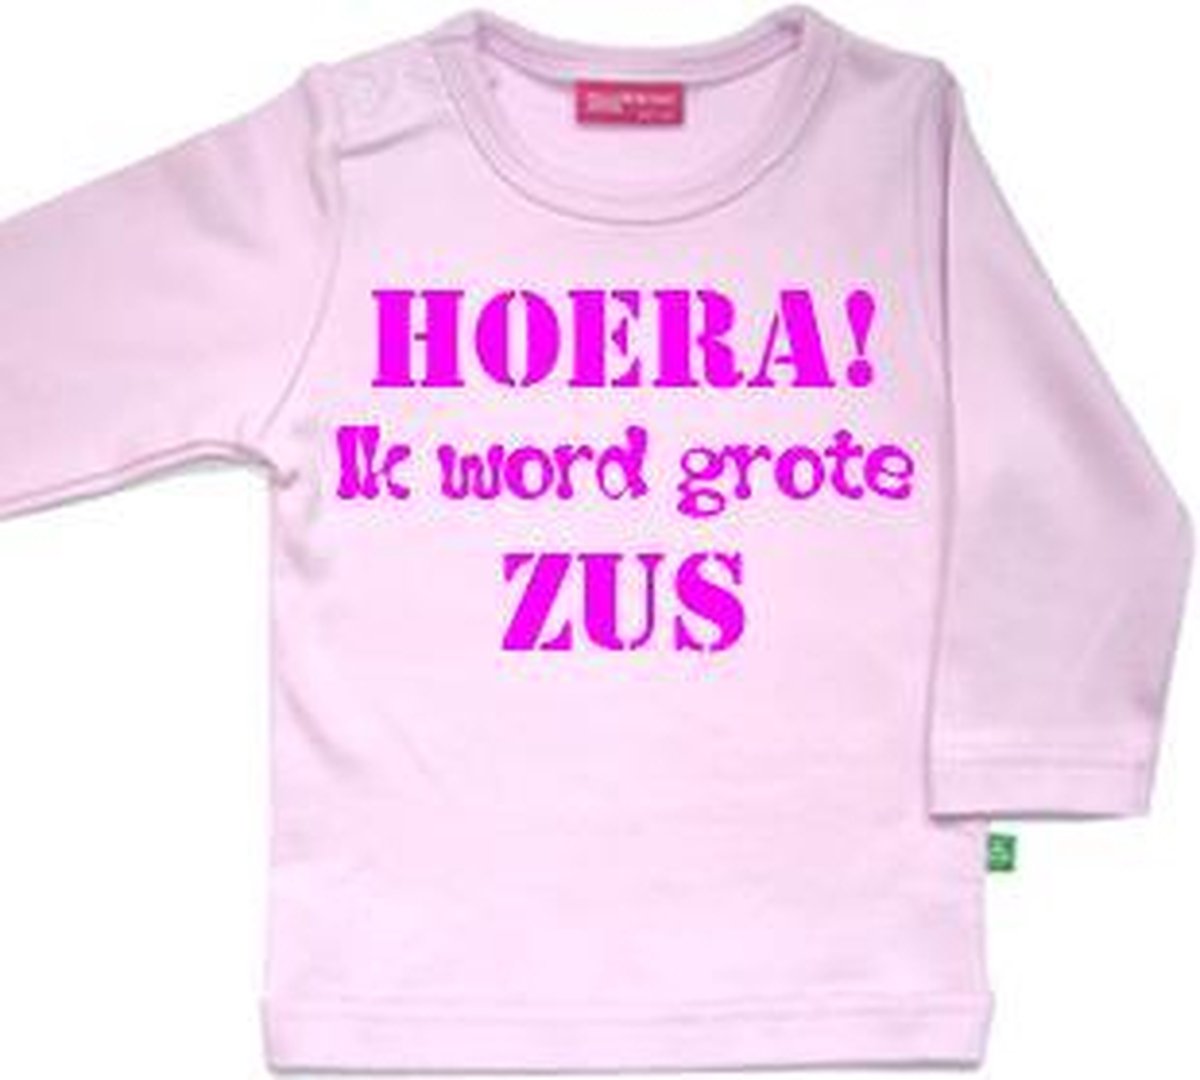 T-shirt Hoera! ik word grote zus| Lange mouw | licht roze | maat 74/80